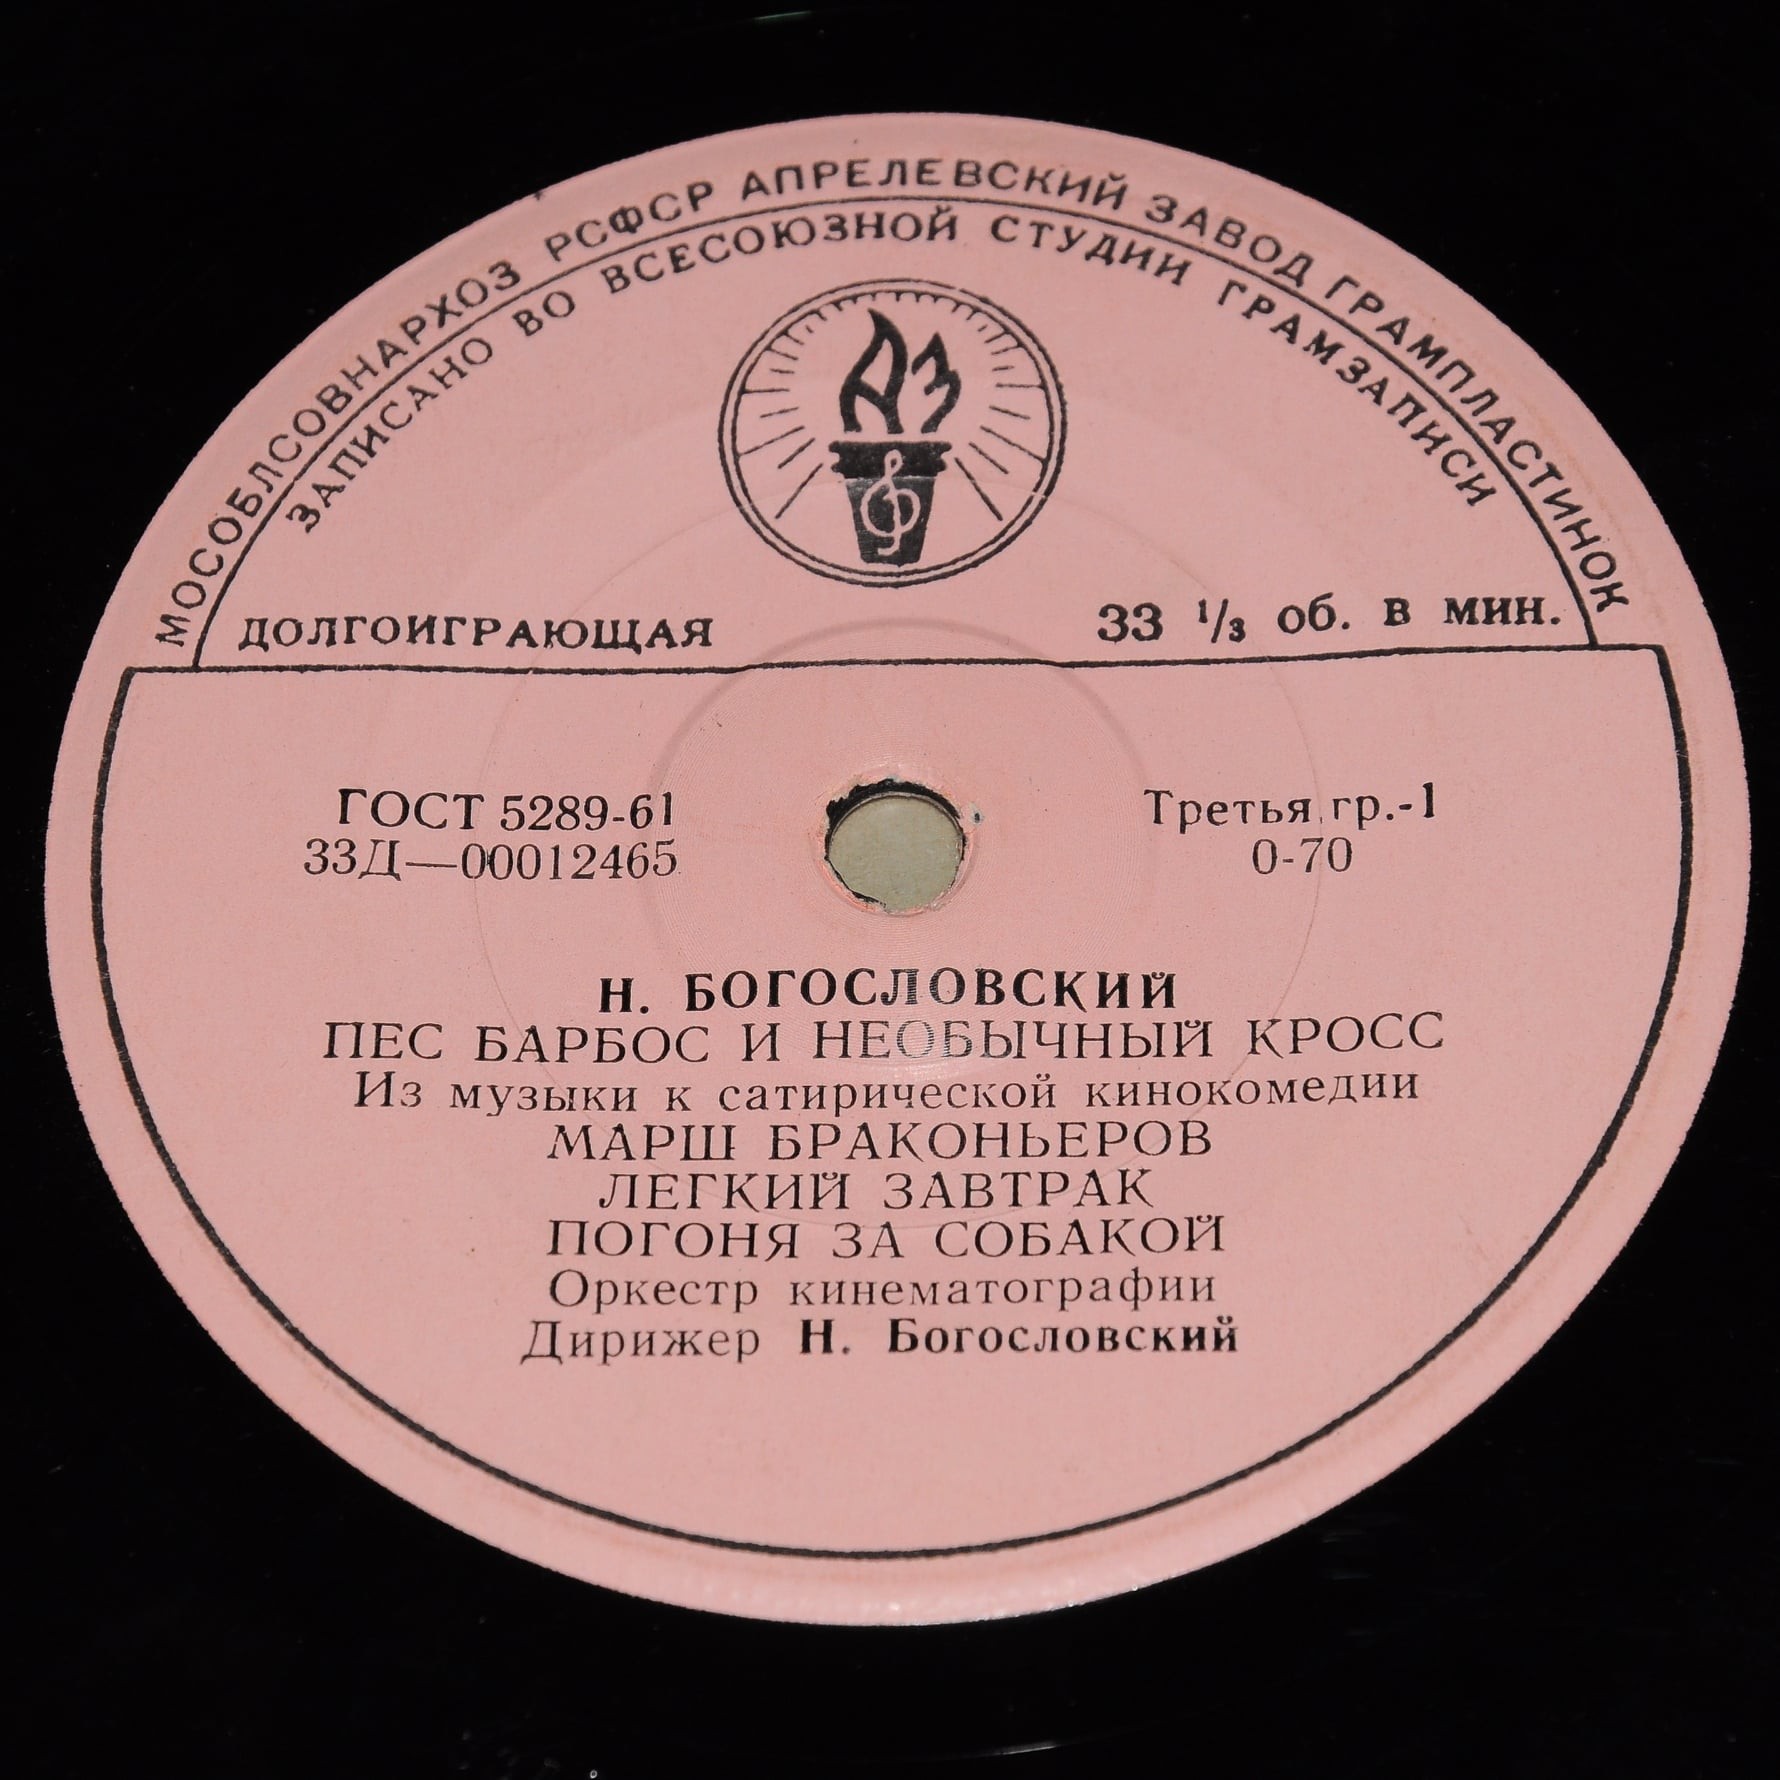 Н. БОГОСЛОВСКИЙ (1913) - Из музыки к сатирическим кинокомедиям